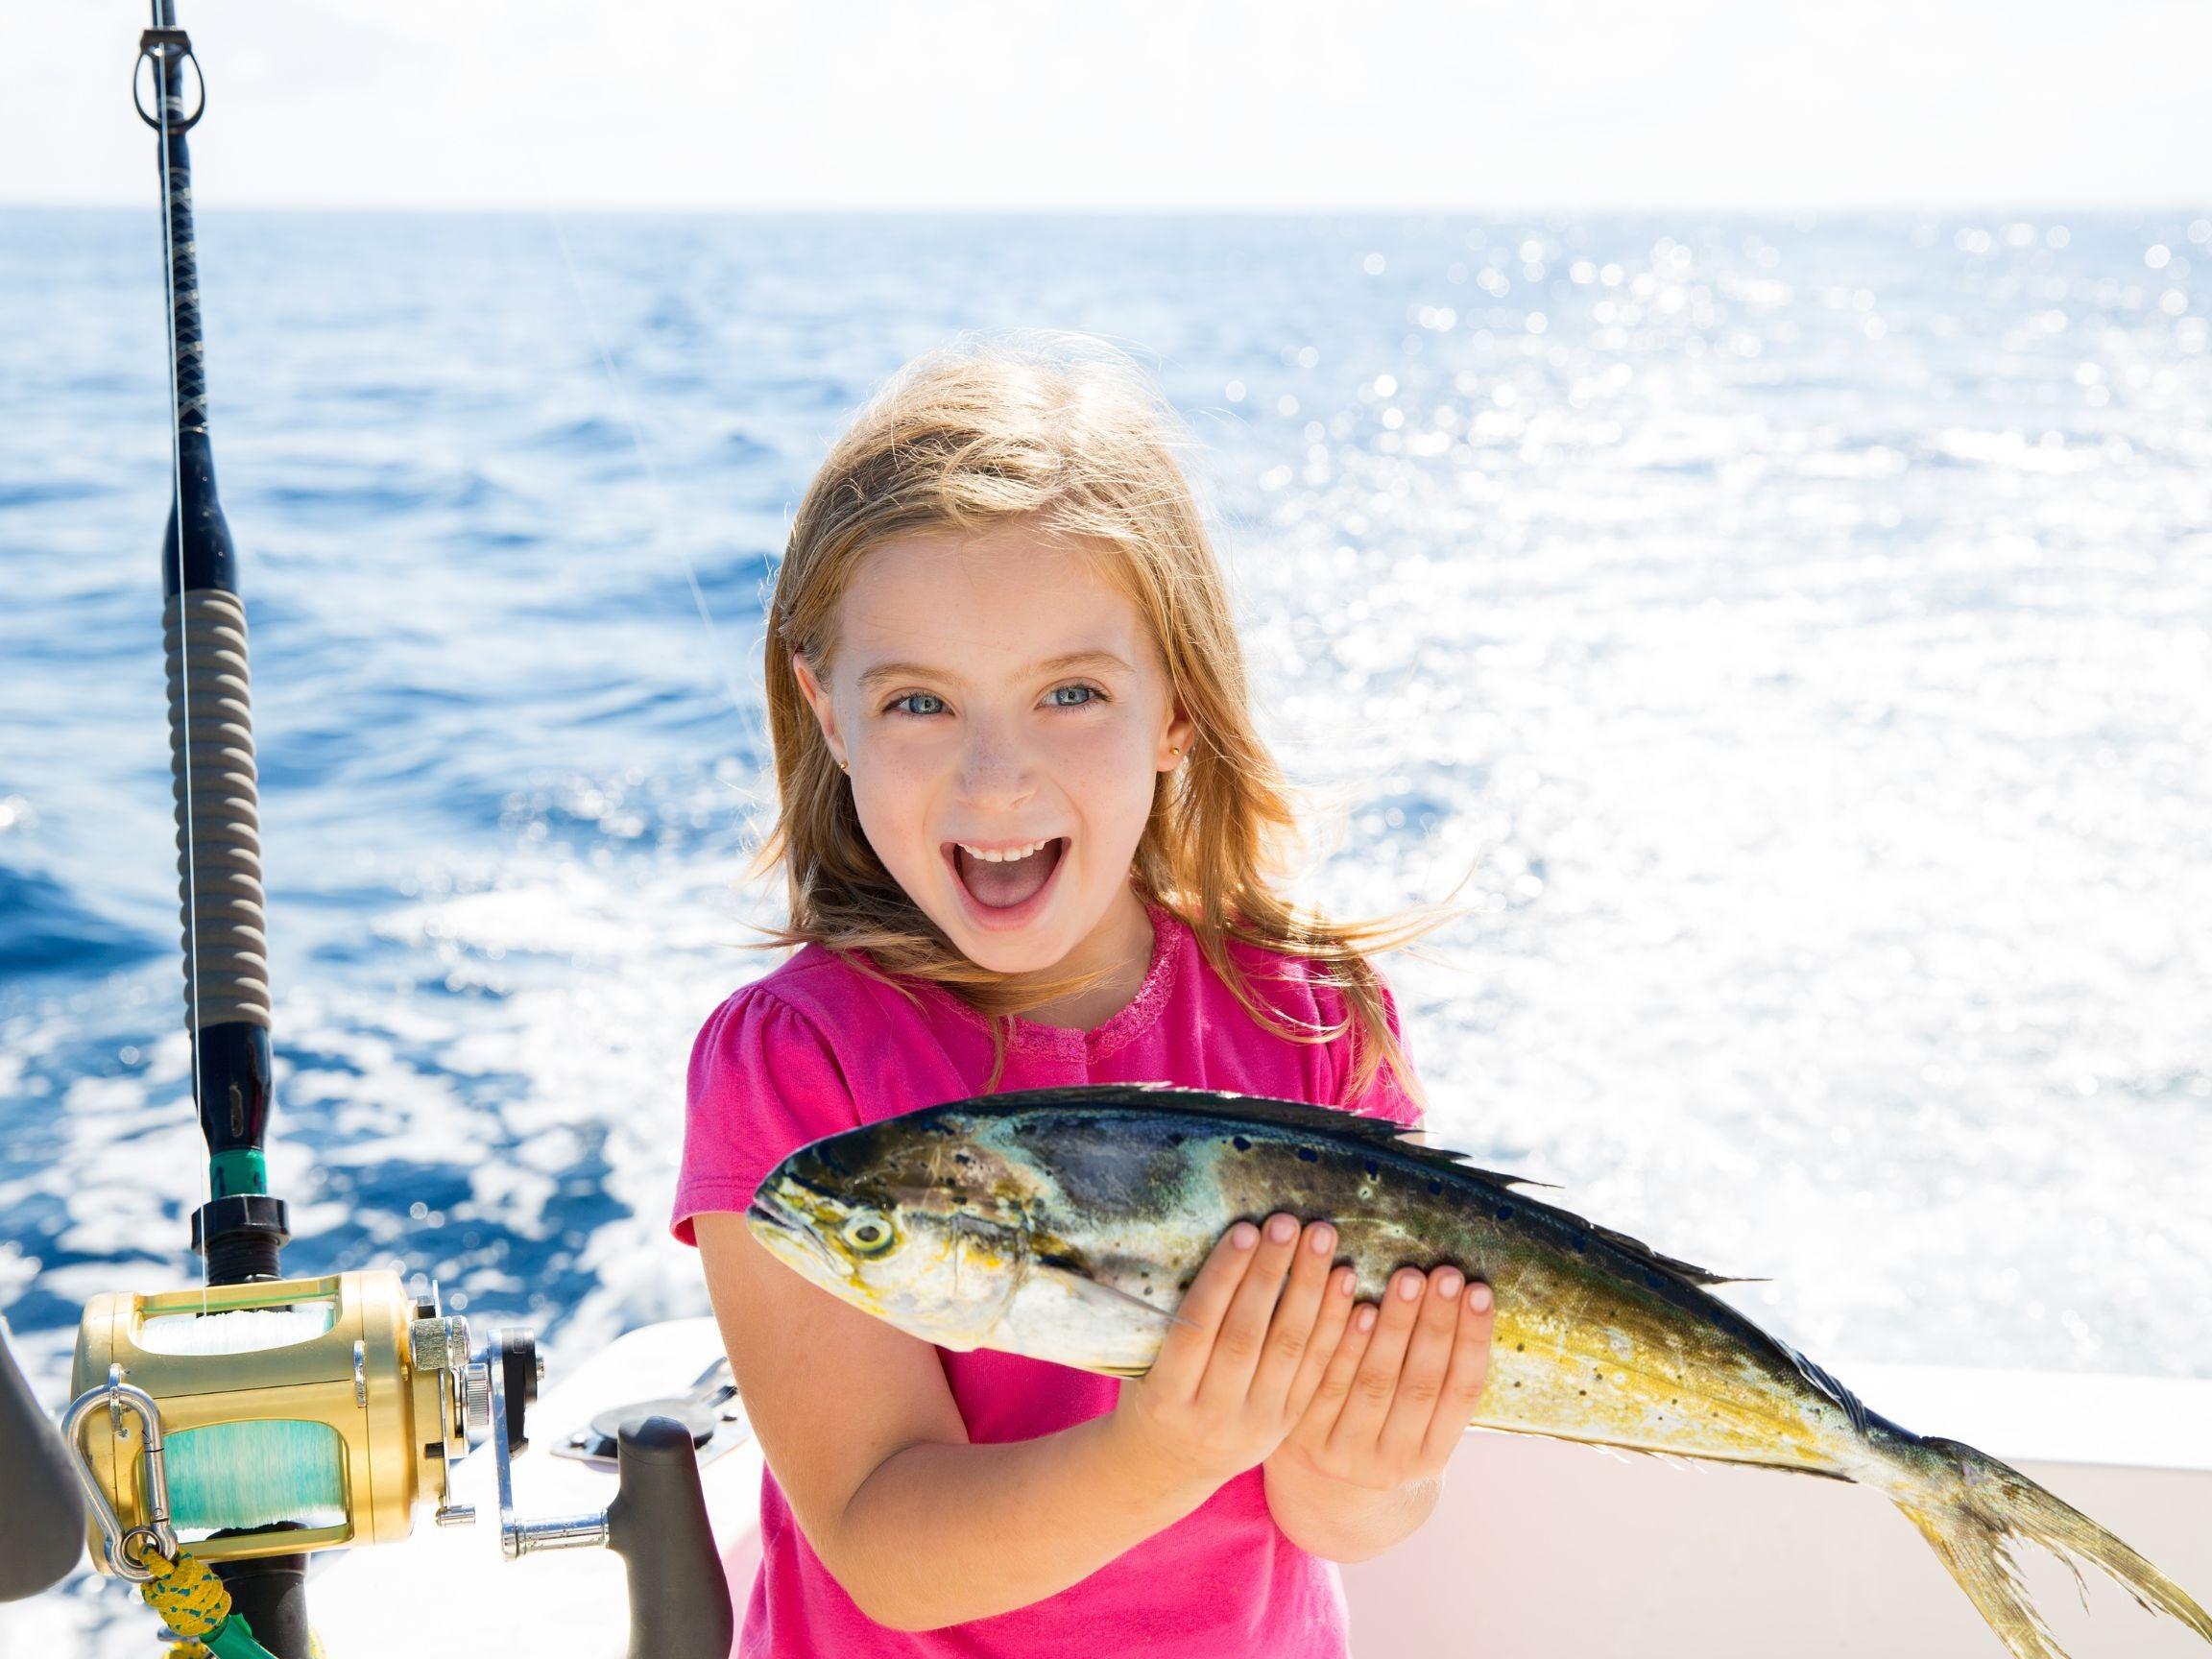 Family Fishing Weekend Ideas & Trips  Fishing vacation, Family weekend  trips, Fly fishing tips